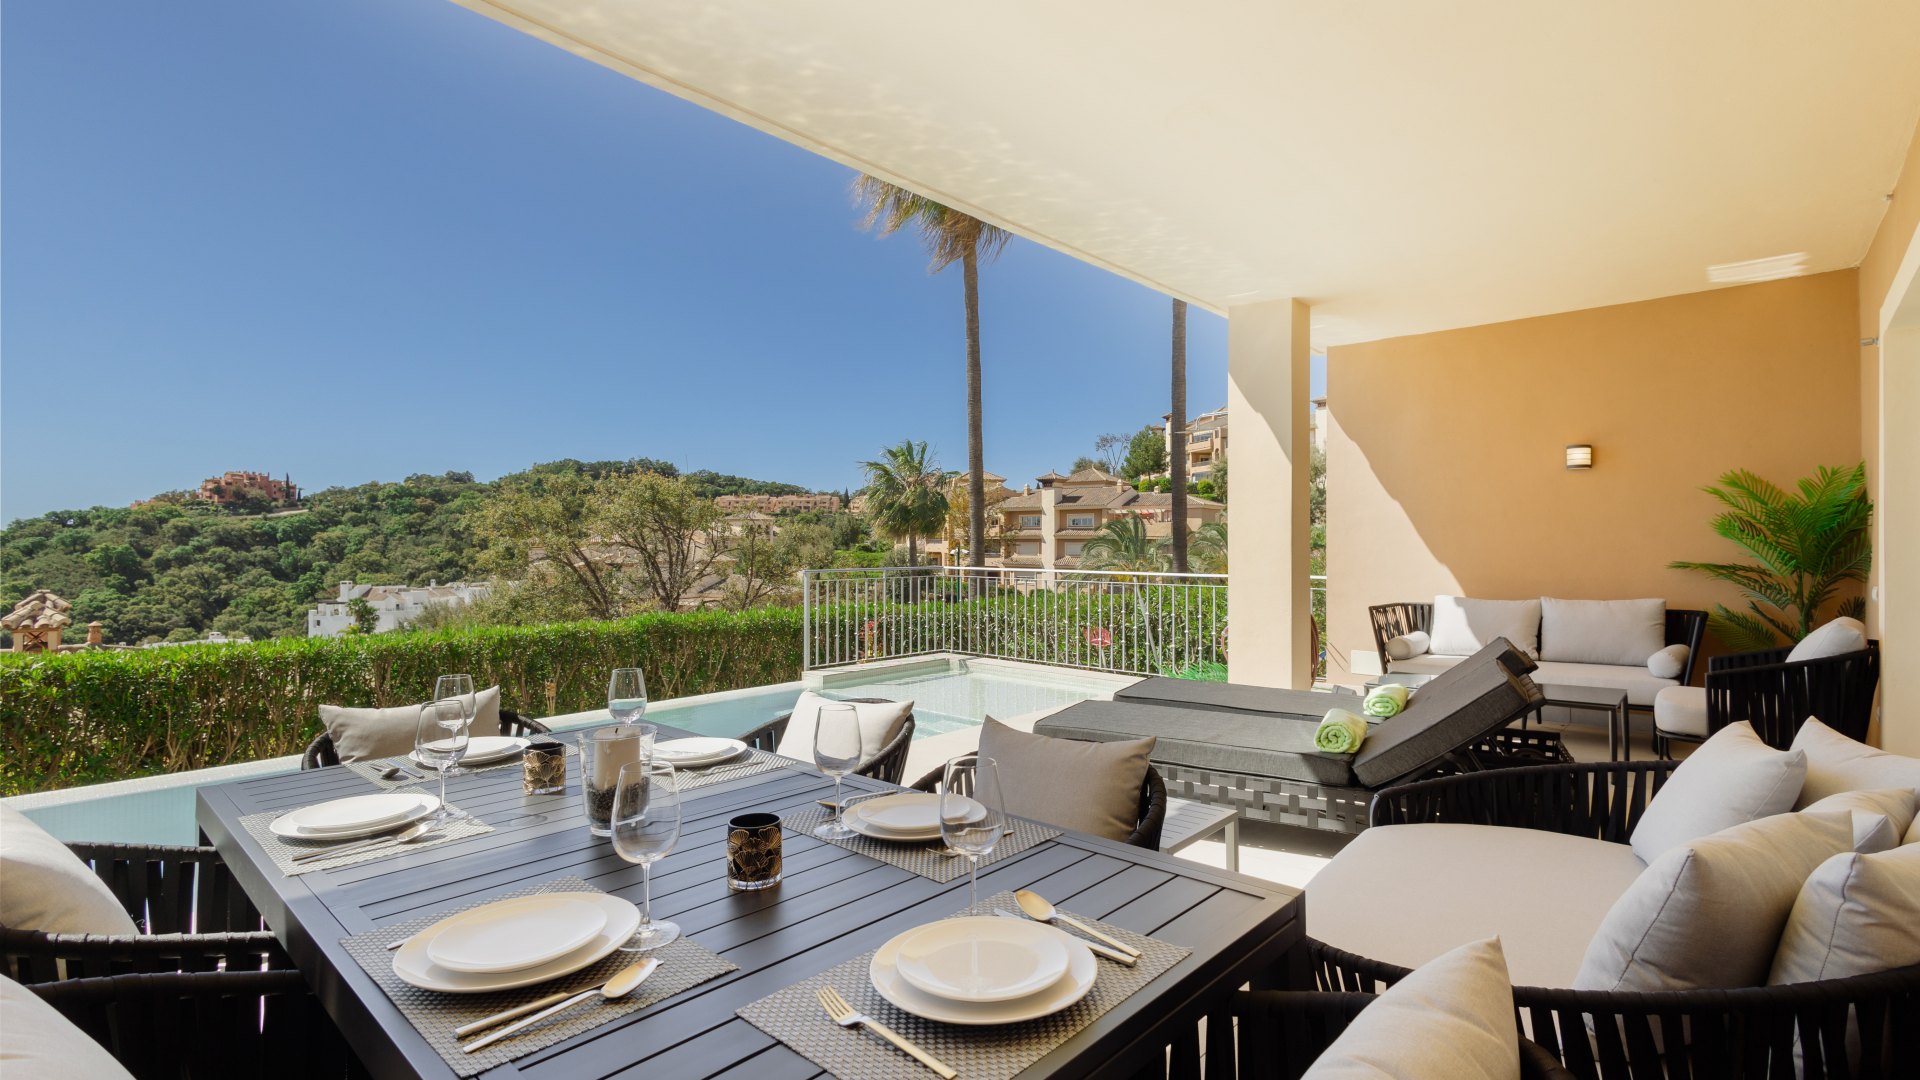 Renovierte Erdgeschoss-Wohnung mit privatem Pool in La Mairena in Elviria, Marbella. Diese Wohnung profitiert von außergewöhnlichen Meerblick und von 3 geräumige Schlafzimmer, 3 Bäder, Marmorboden und offene Küche.